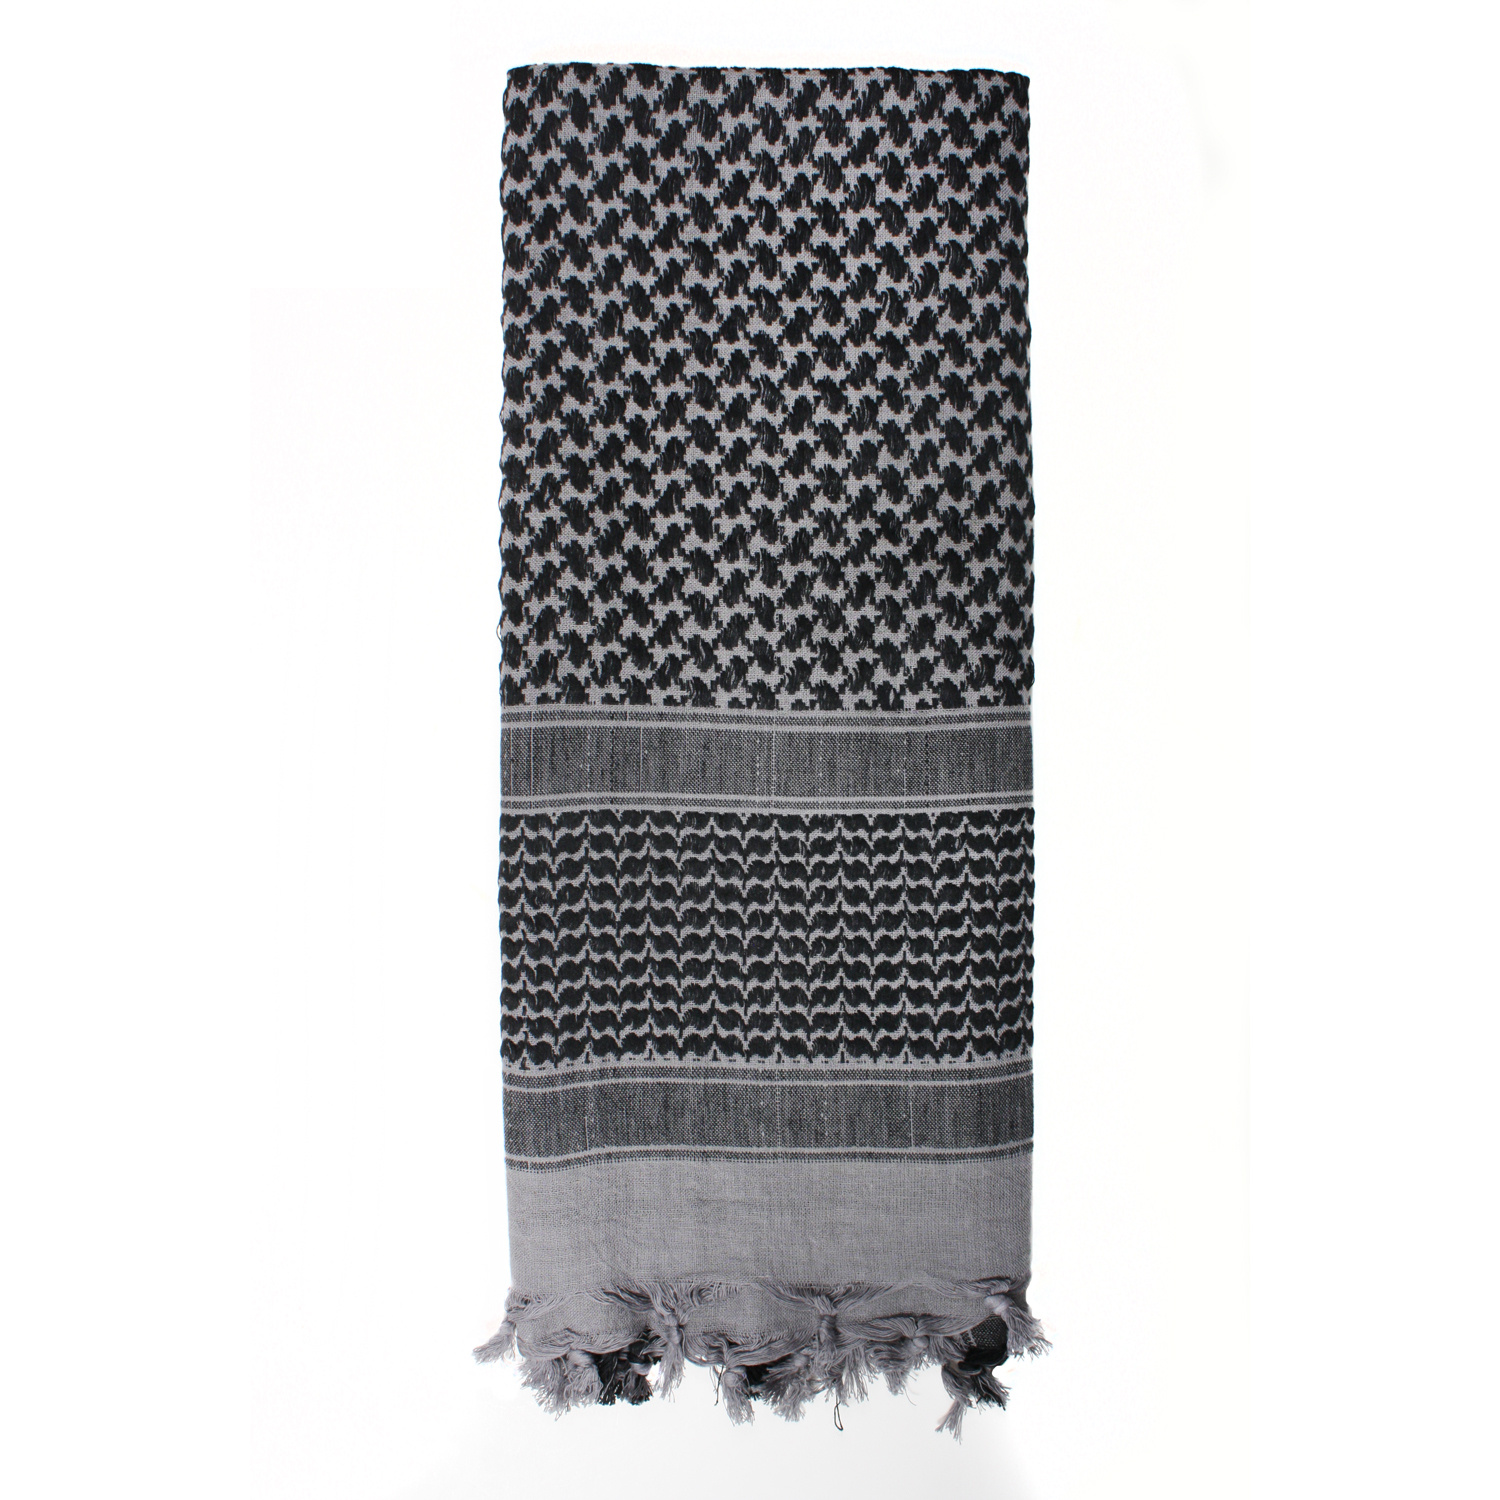 šátek Shemagh odlehčený šedý